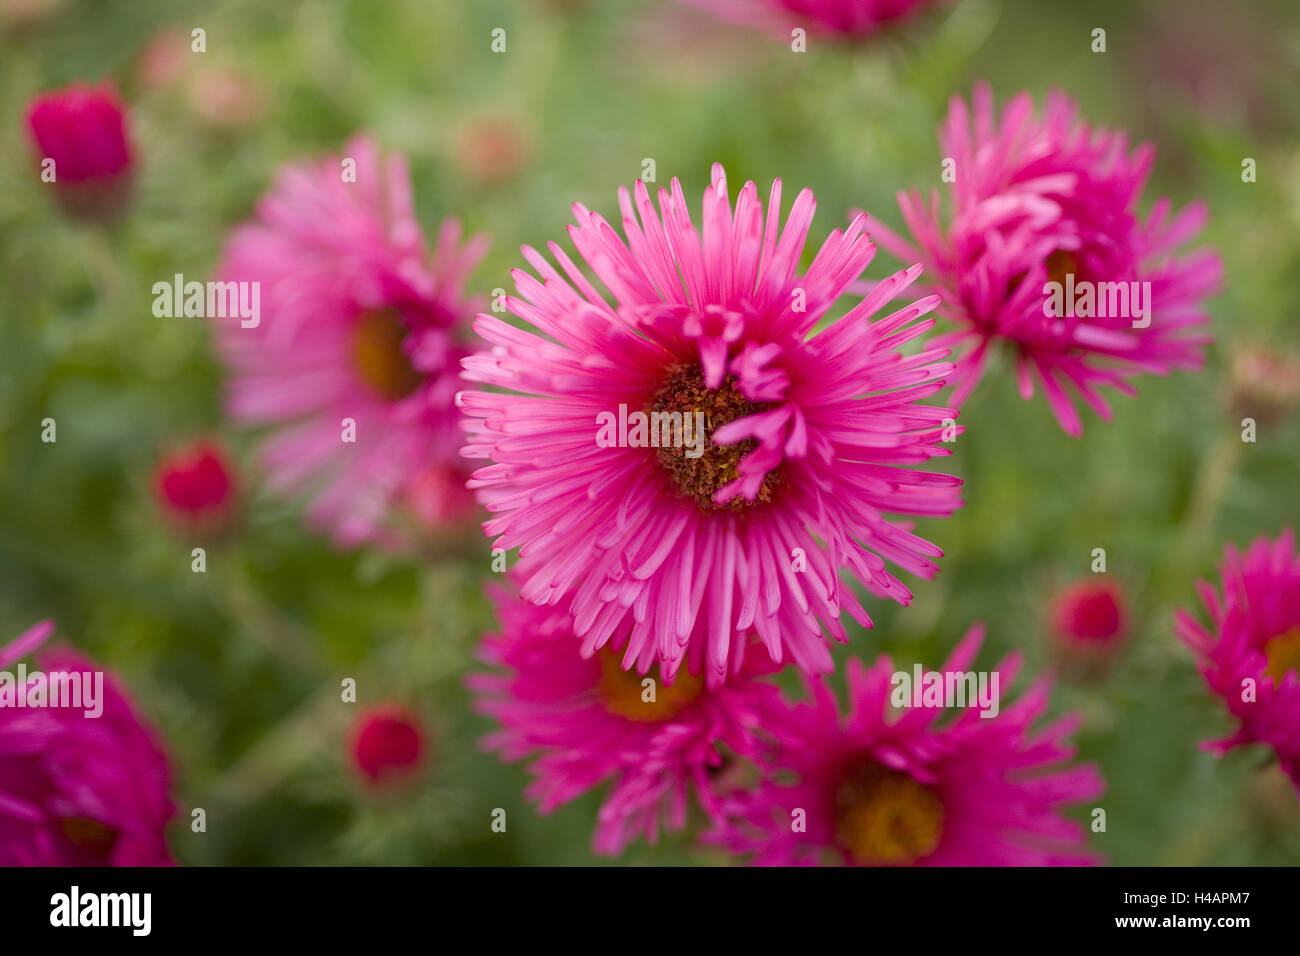 Magenta-coloured aster shrub, blossoms, medium close-up, Stock Photo